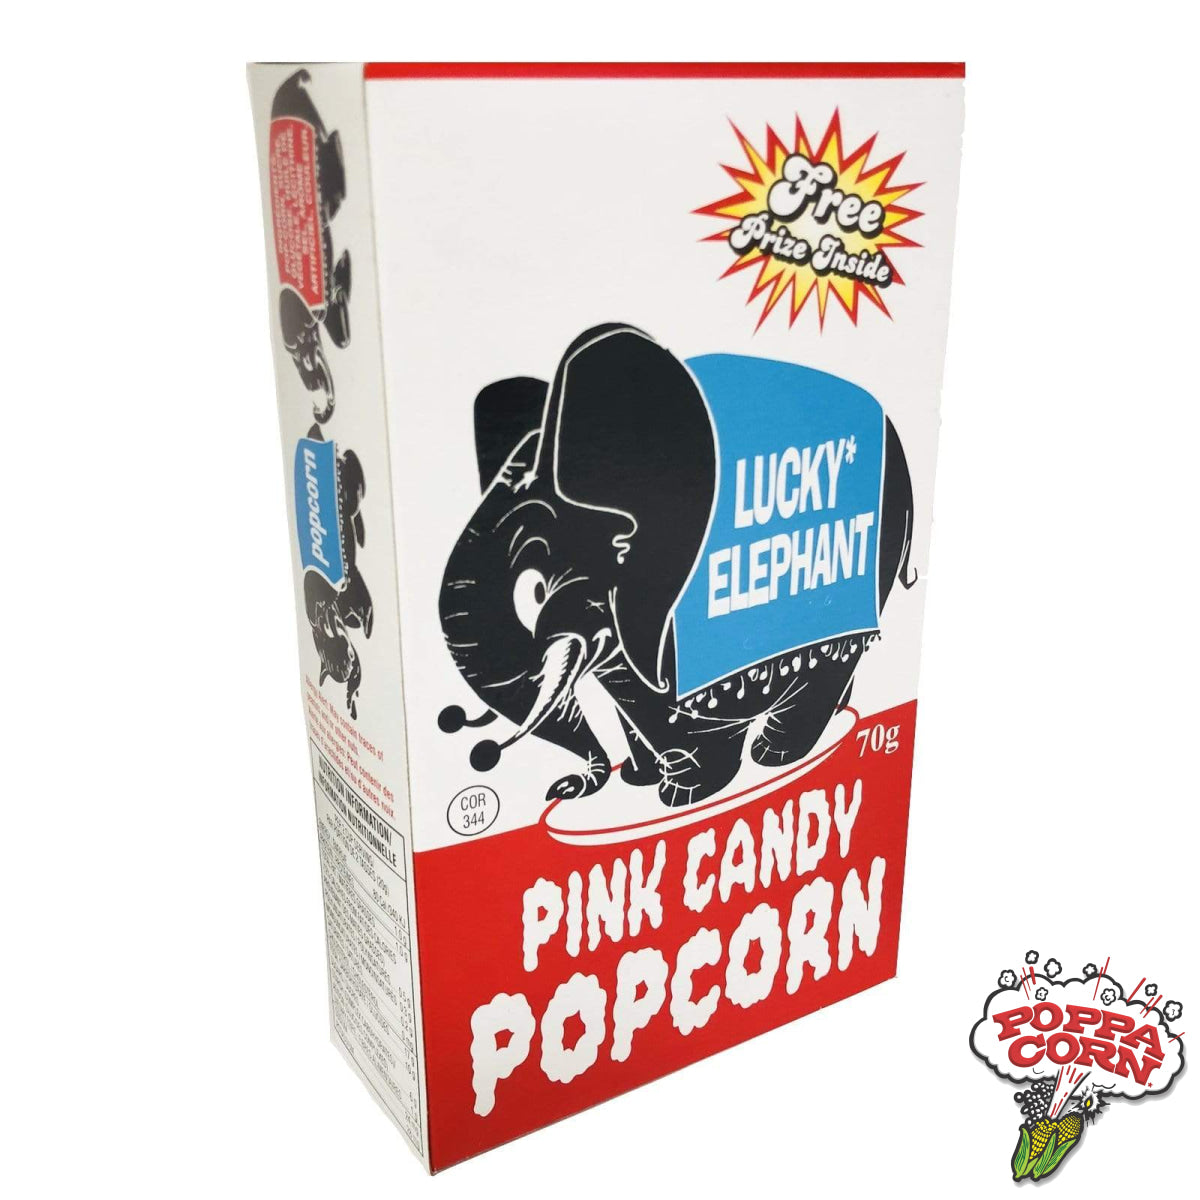 LEC002 - Lucky Elephant Novelty Pink Candy Popcorn - 12 x 70g/Case - Poppa Corn Corp